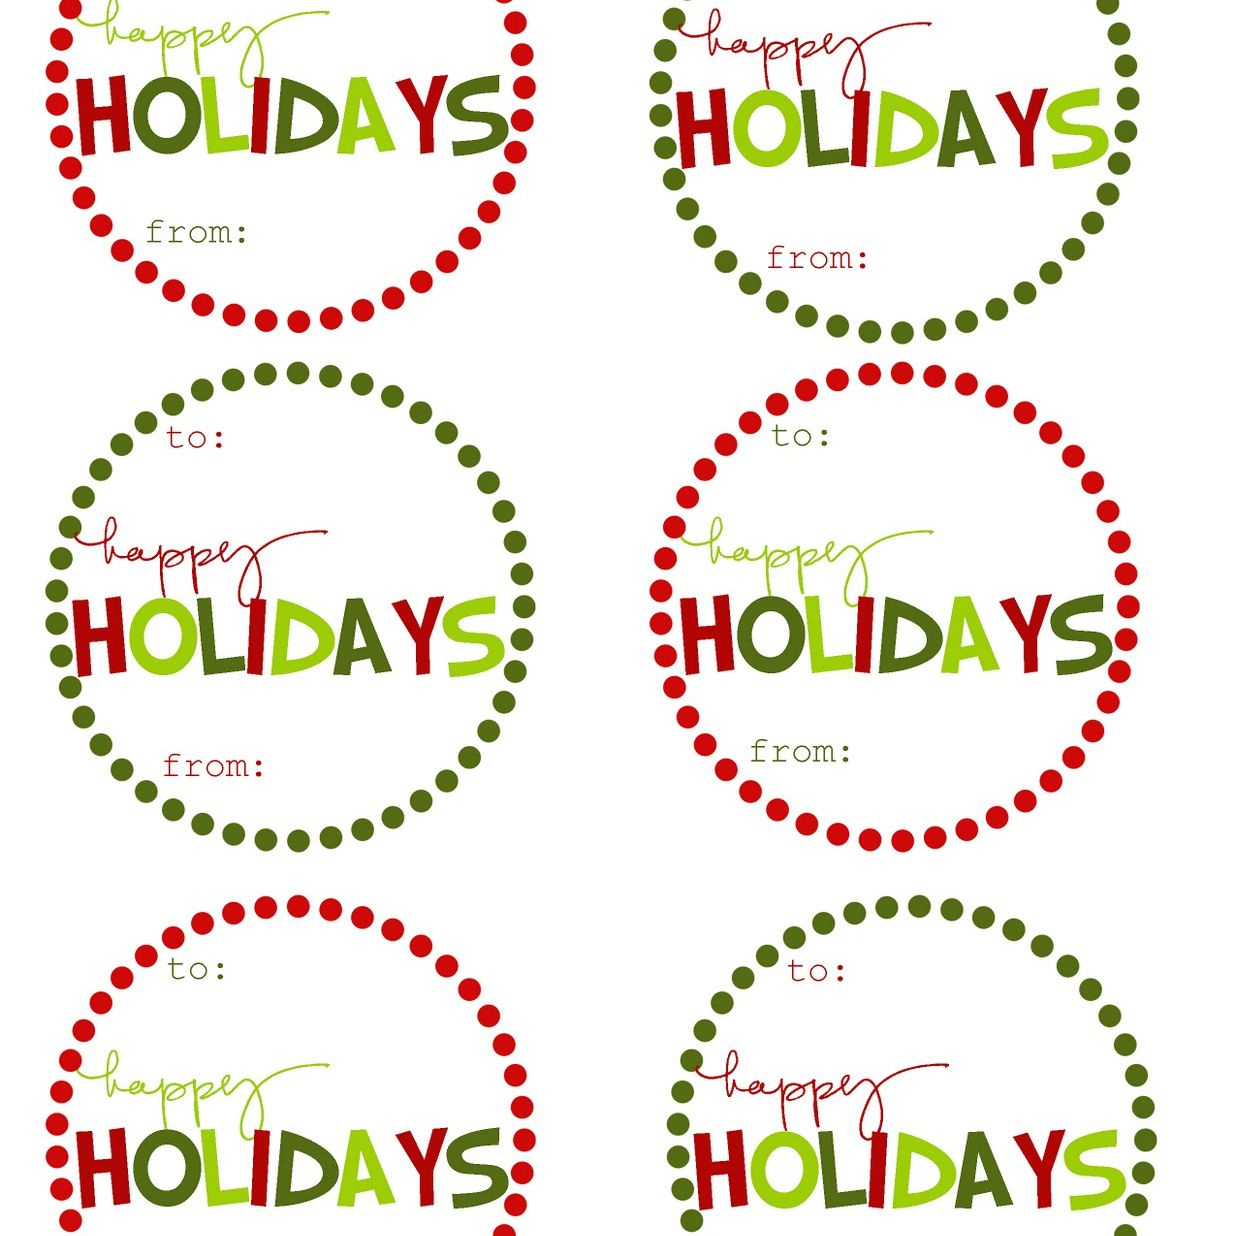 40 Sets Of Free Printable Christmas Gift Tags - Free Printable To From Gift Tags